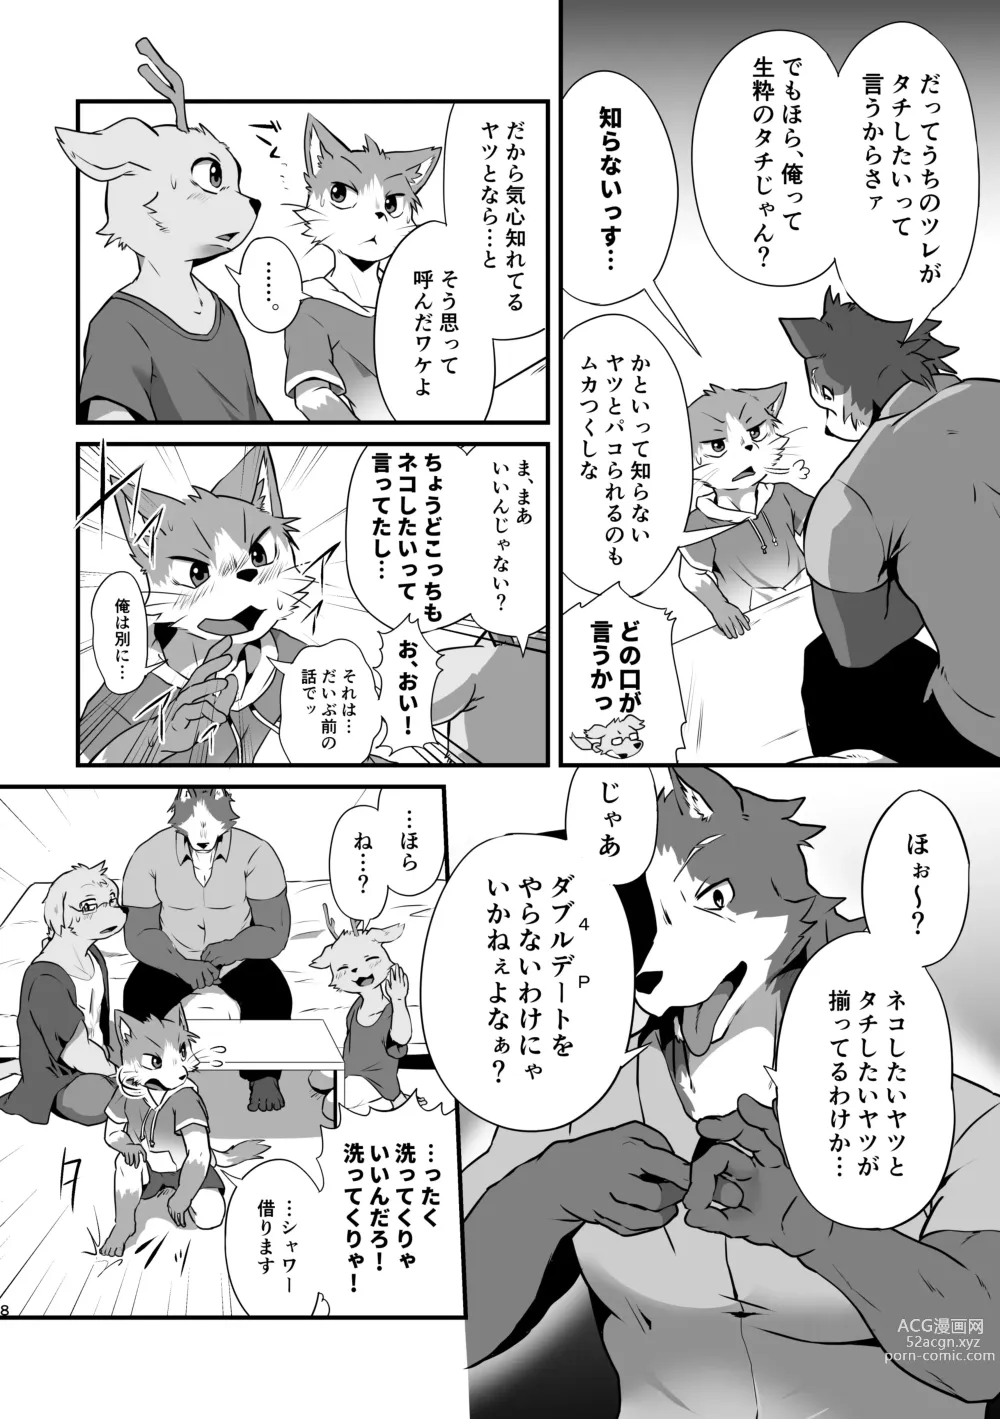 Page 7 of doujinshi Boku-Tachi Futari wa Neko shitai!